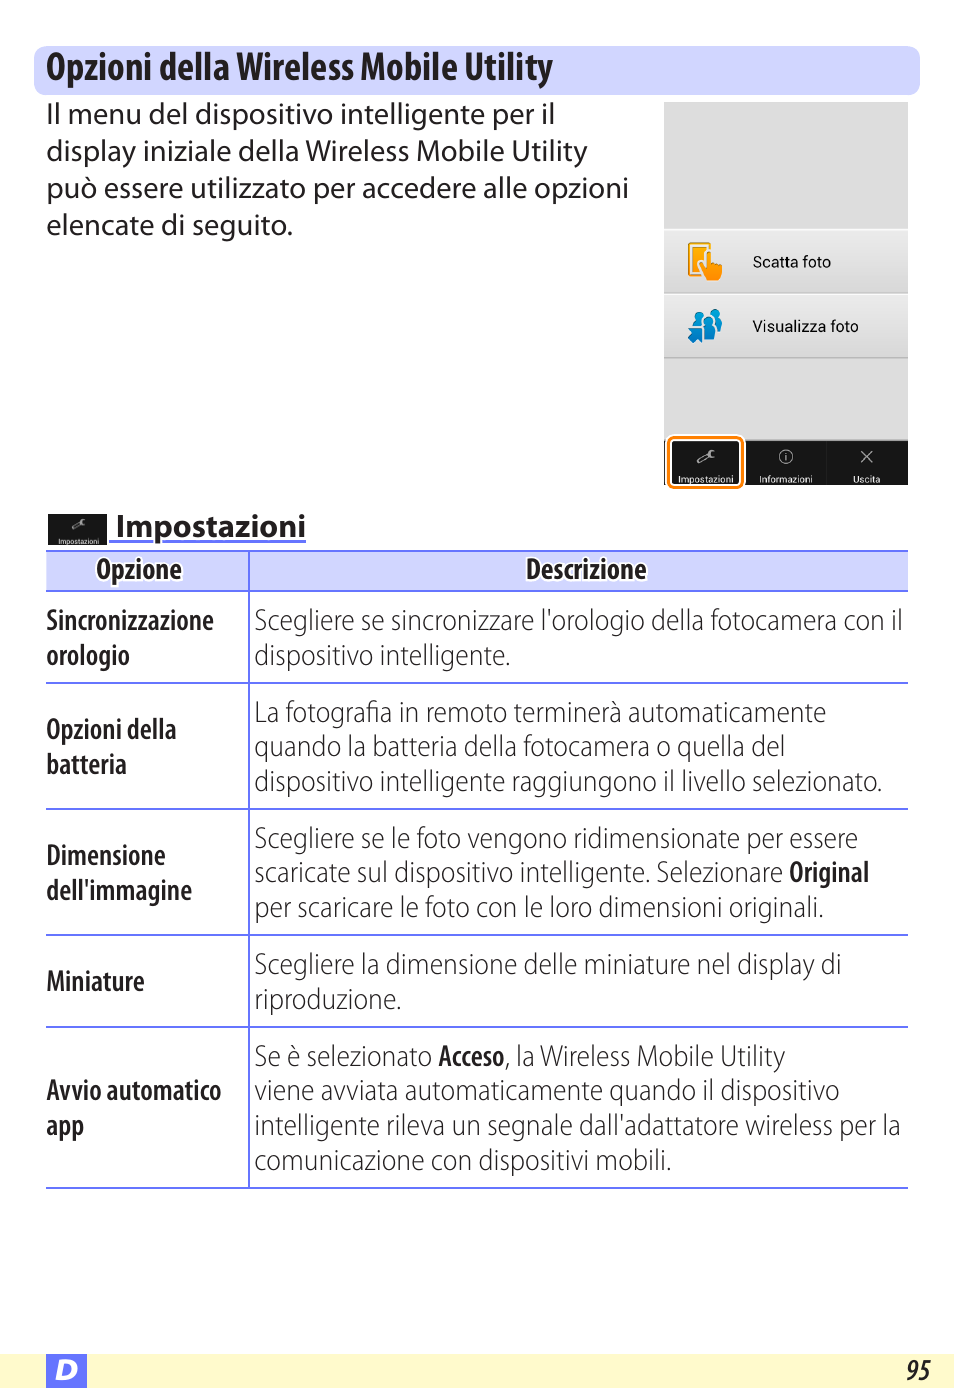 Opzioni della wireless mobile utility, Impostazioni | Nikon Wireless-Mobile-Utility Manuale d'uso | Pagina 95 / 97